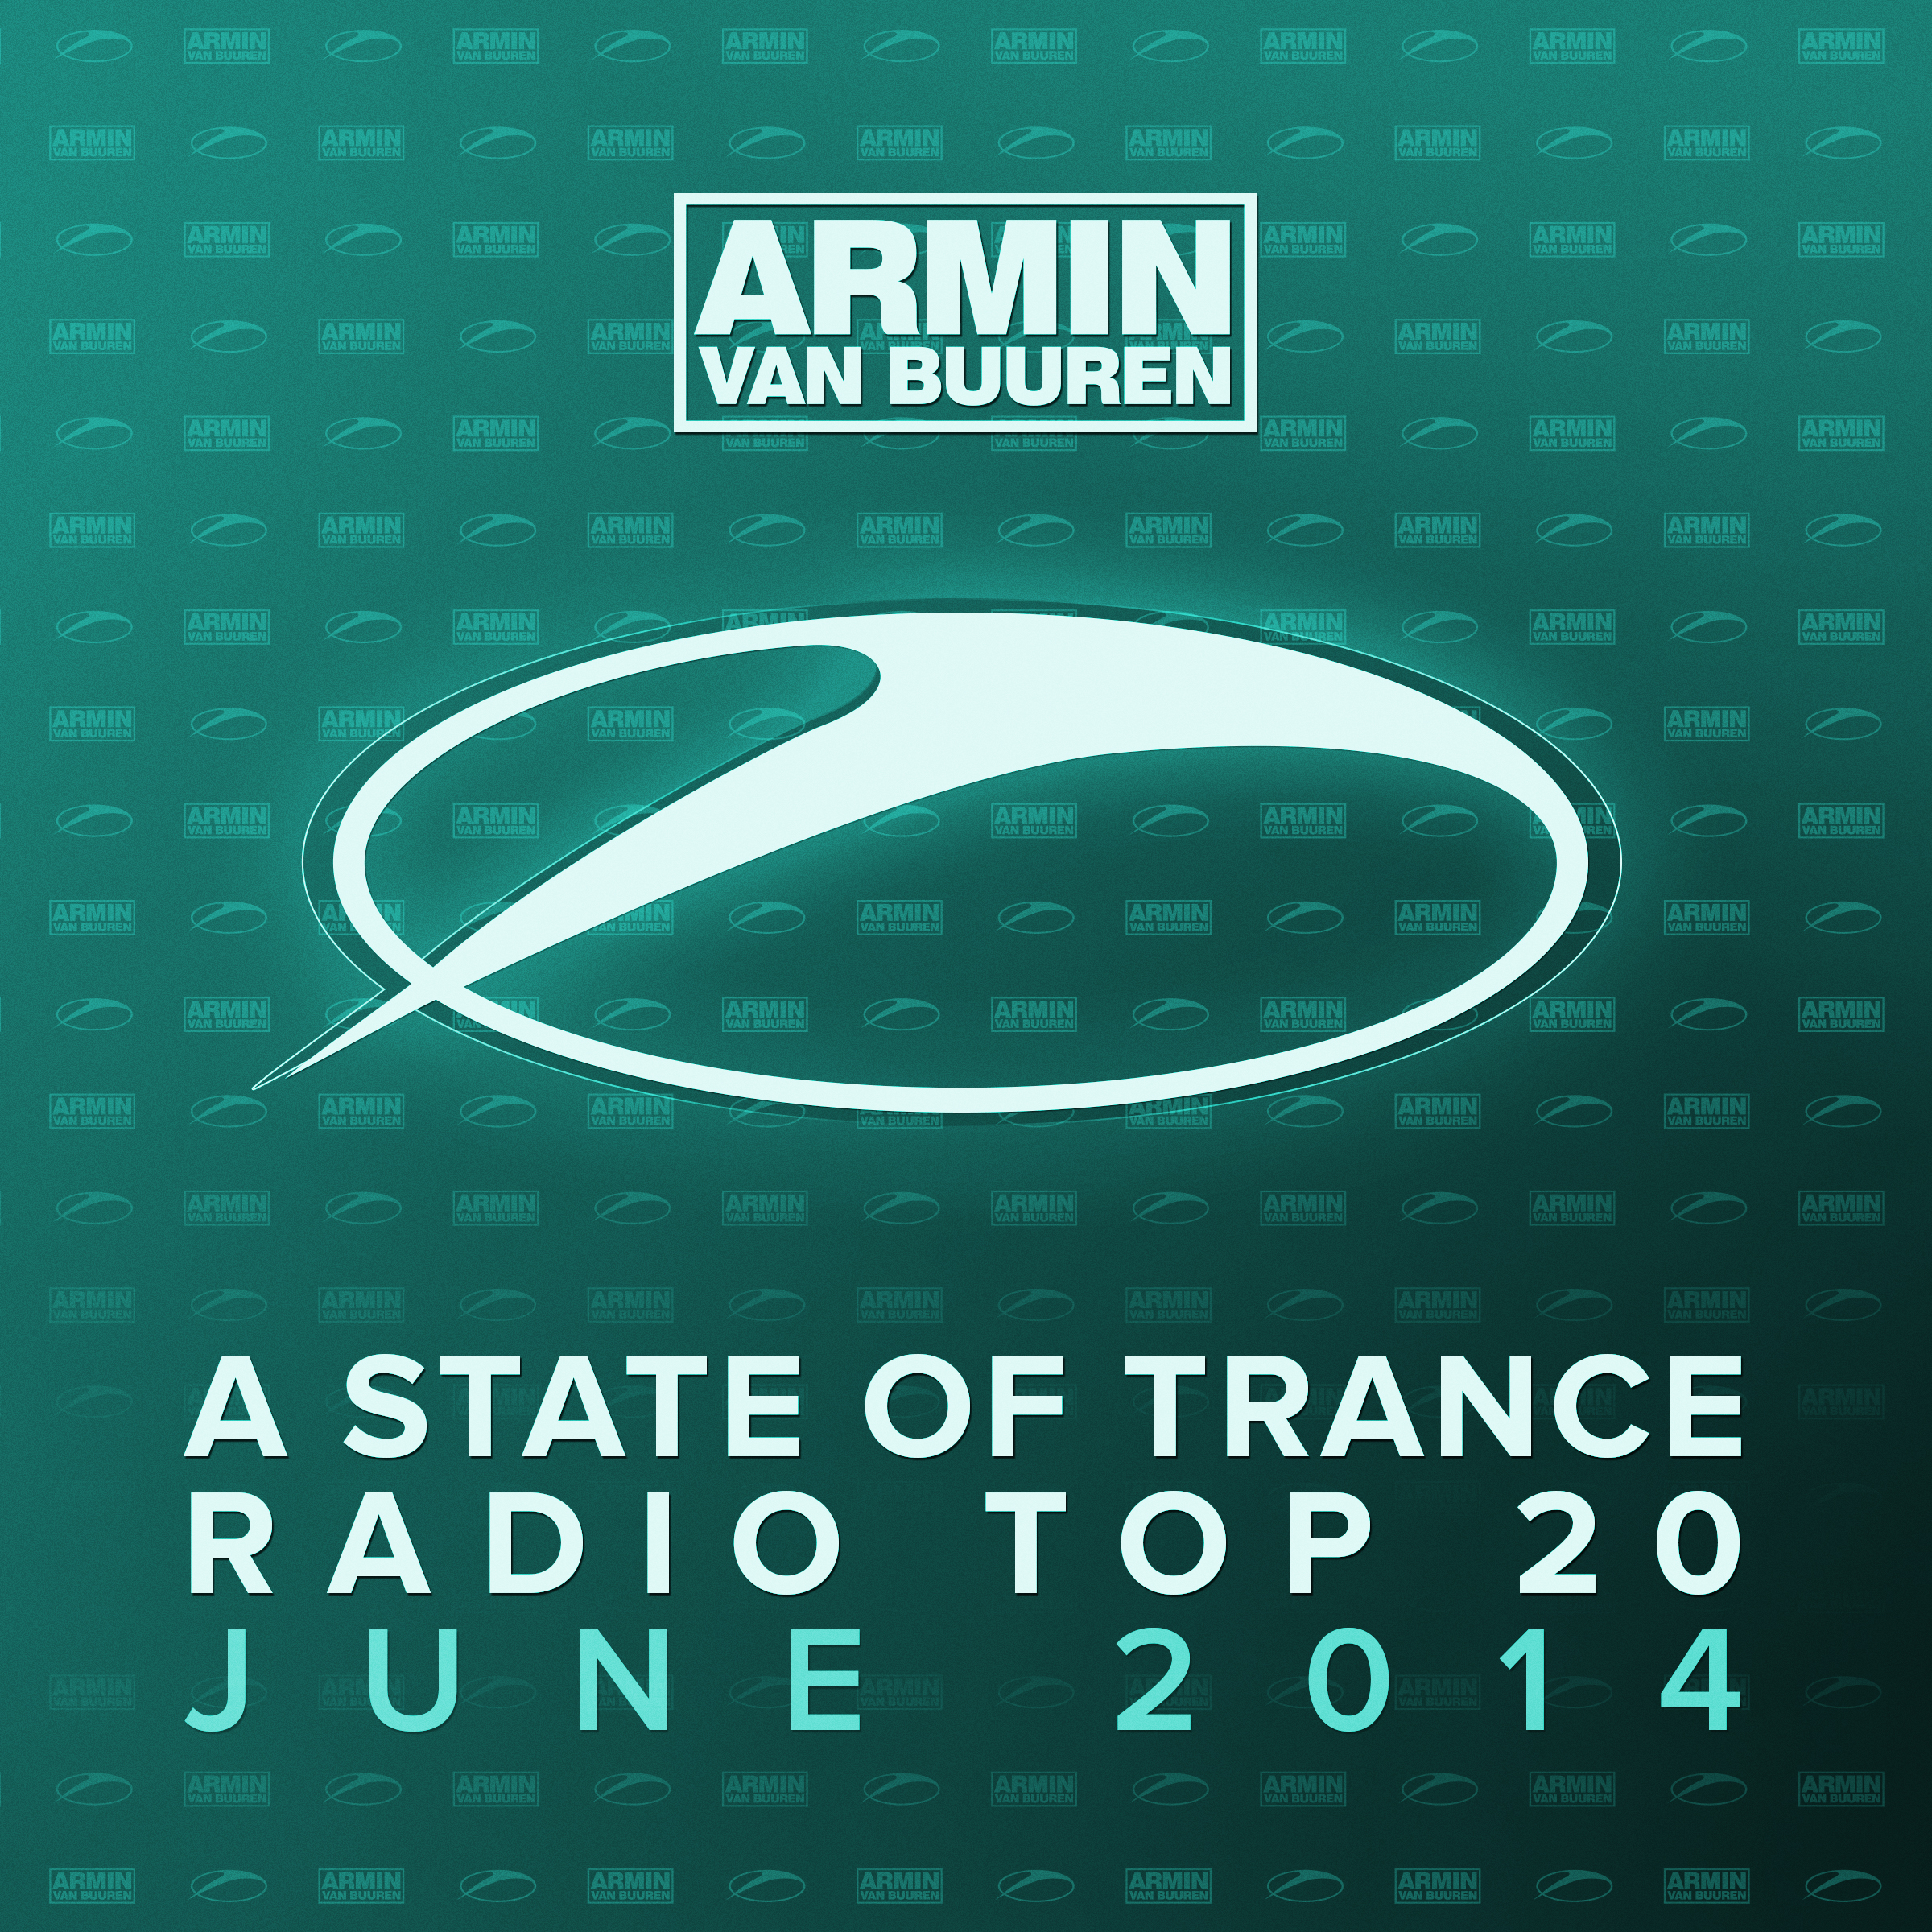 Shkarko Armin van Buuren & Andrew Rayel - EIFORYA (Ben Gold Remix) [ASOT Radio Top 20 - June 2014]